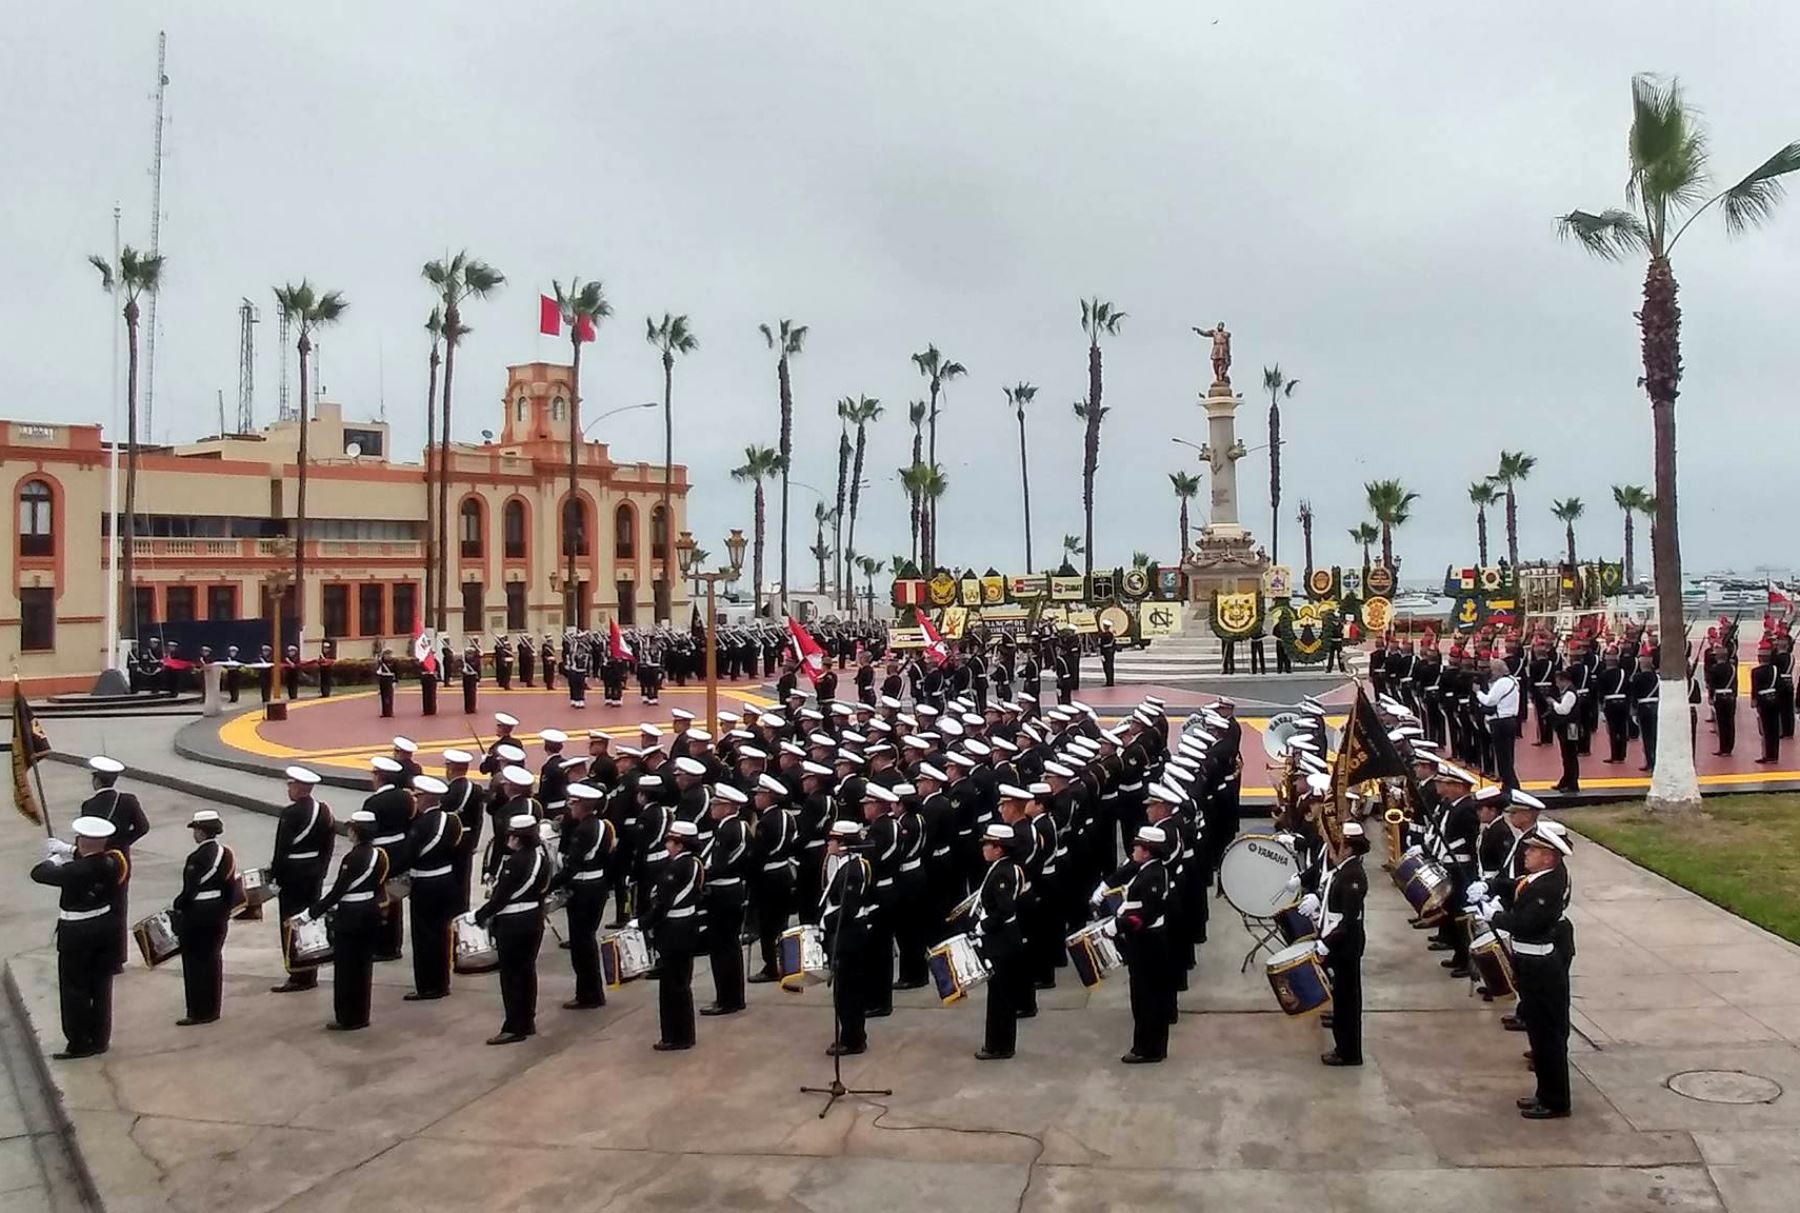 Marina de Guerra recuerda hoy combate de Angamos y héroe Miguel Grau